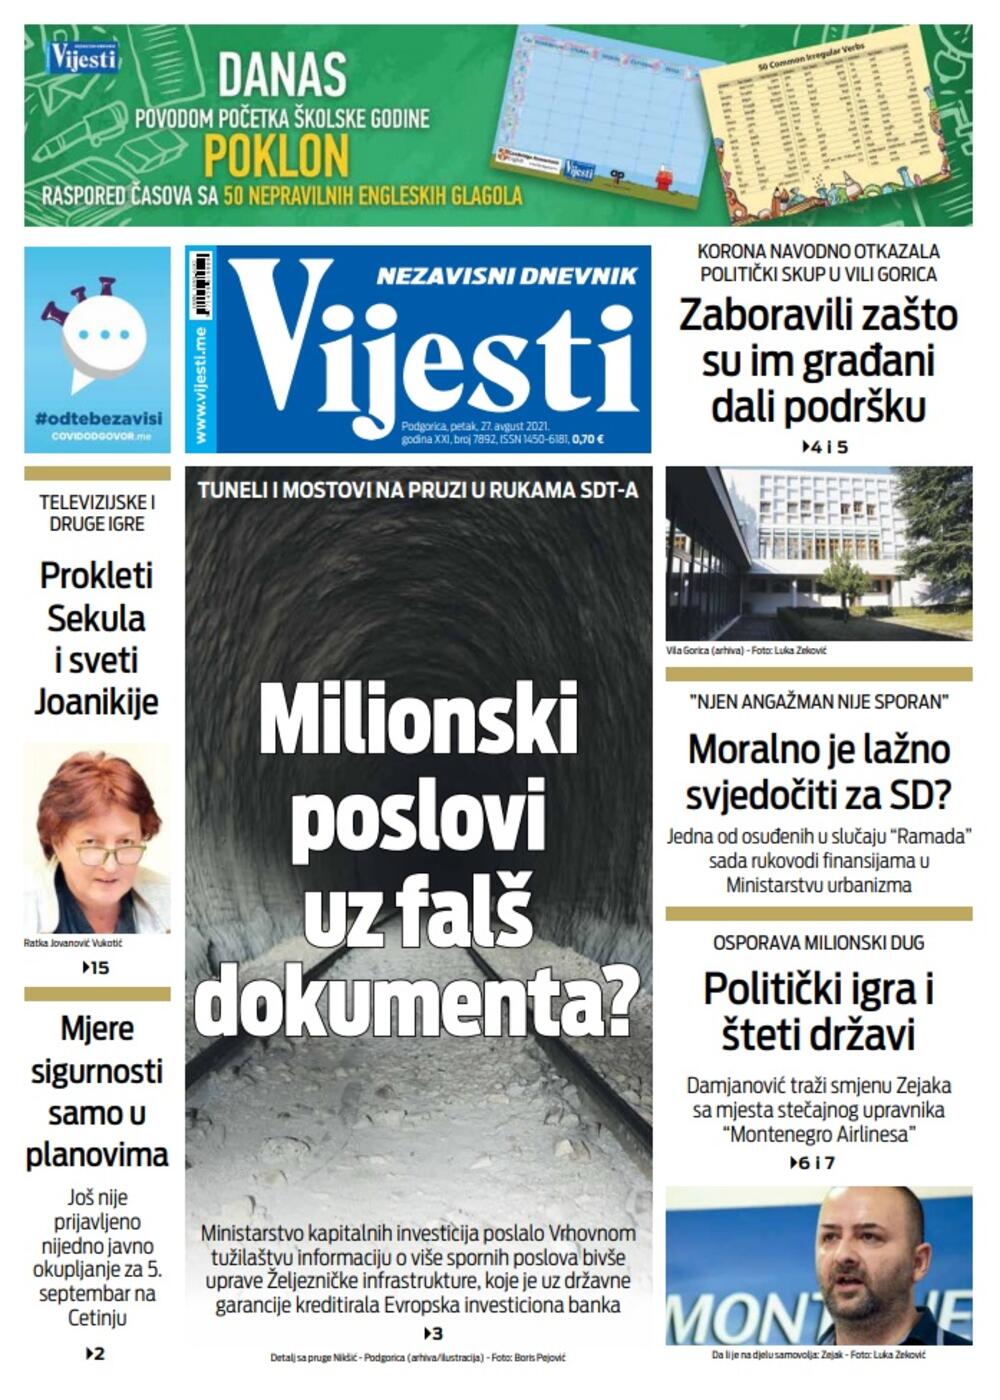 Naslovna strana "Vijesti" za petak 27. avgust 2021. godine, Foto: Vijesti